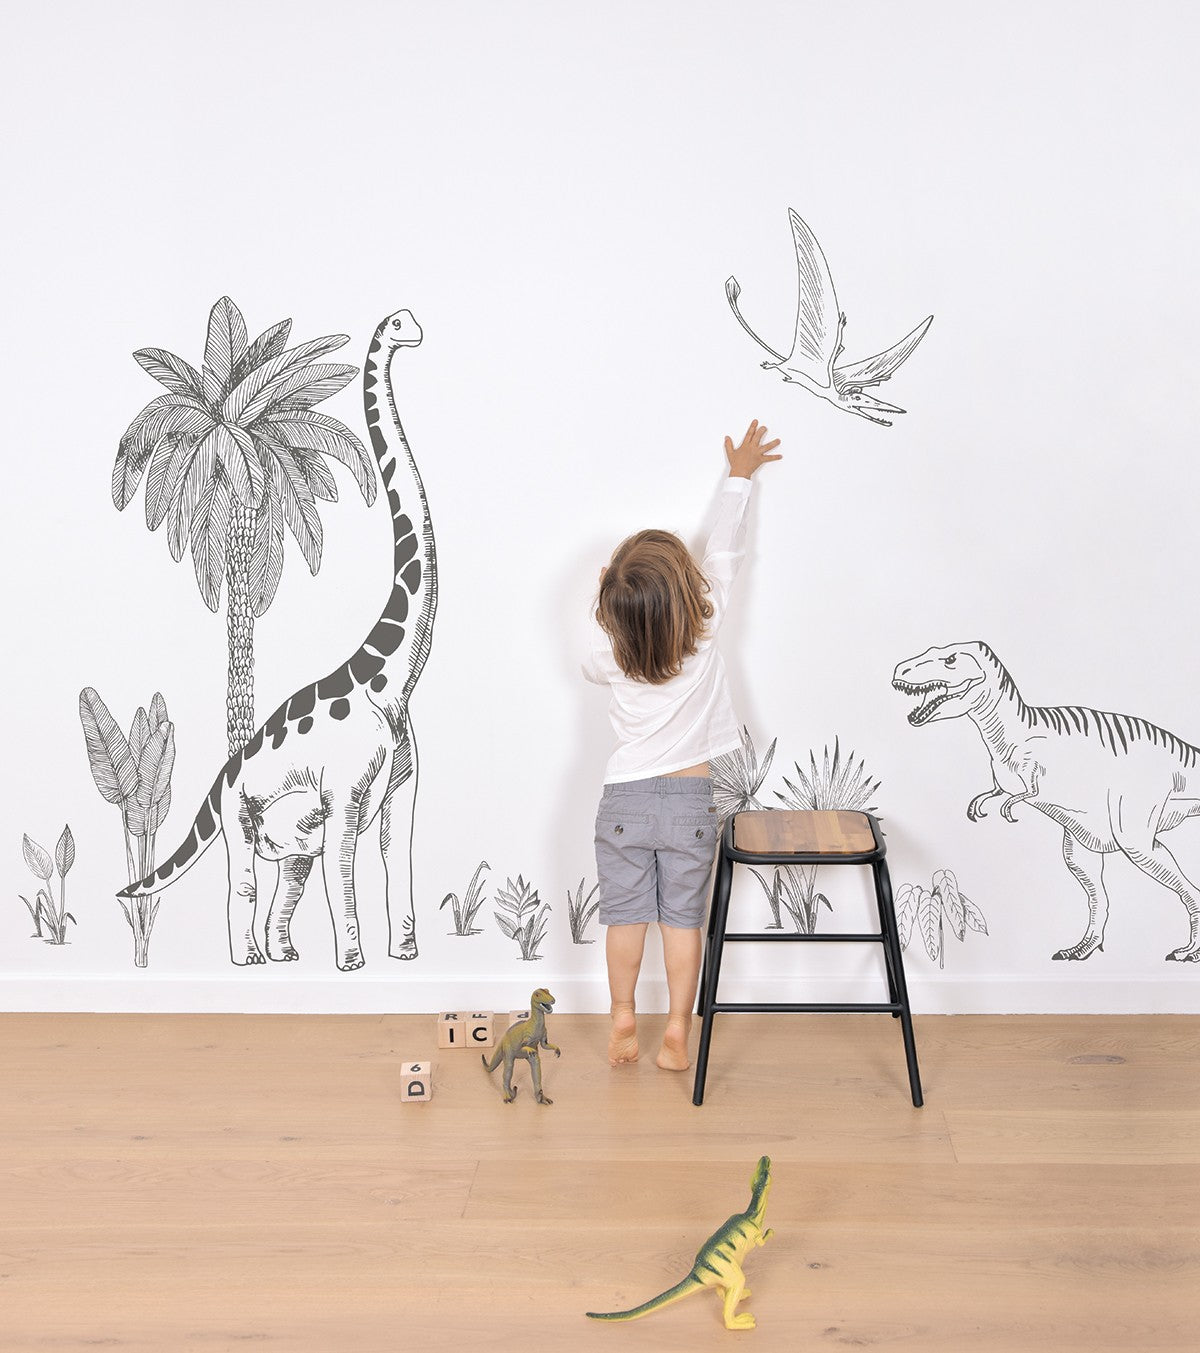 DINOSAURUS - Vinilos Infantiles muraux - Dinosaurios: T - rex, pteranodon y palmera